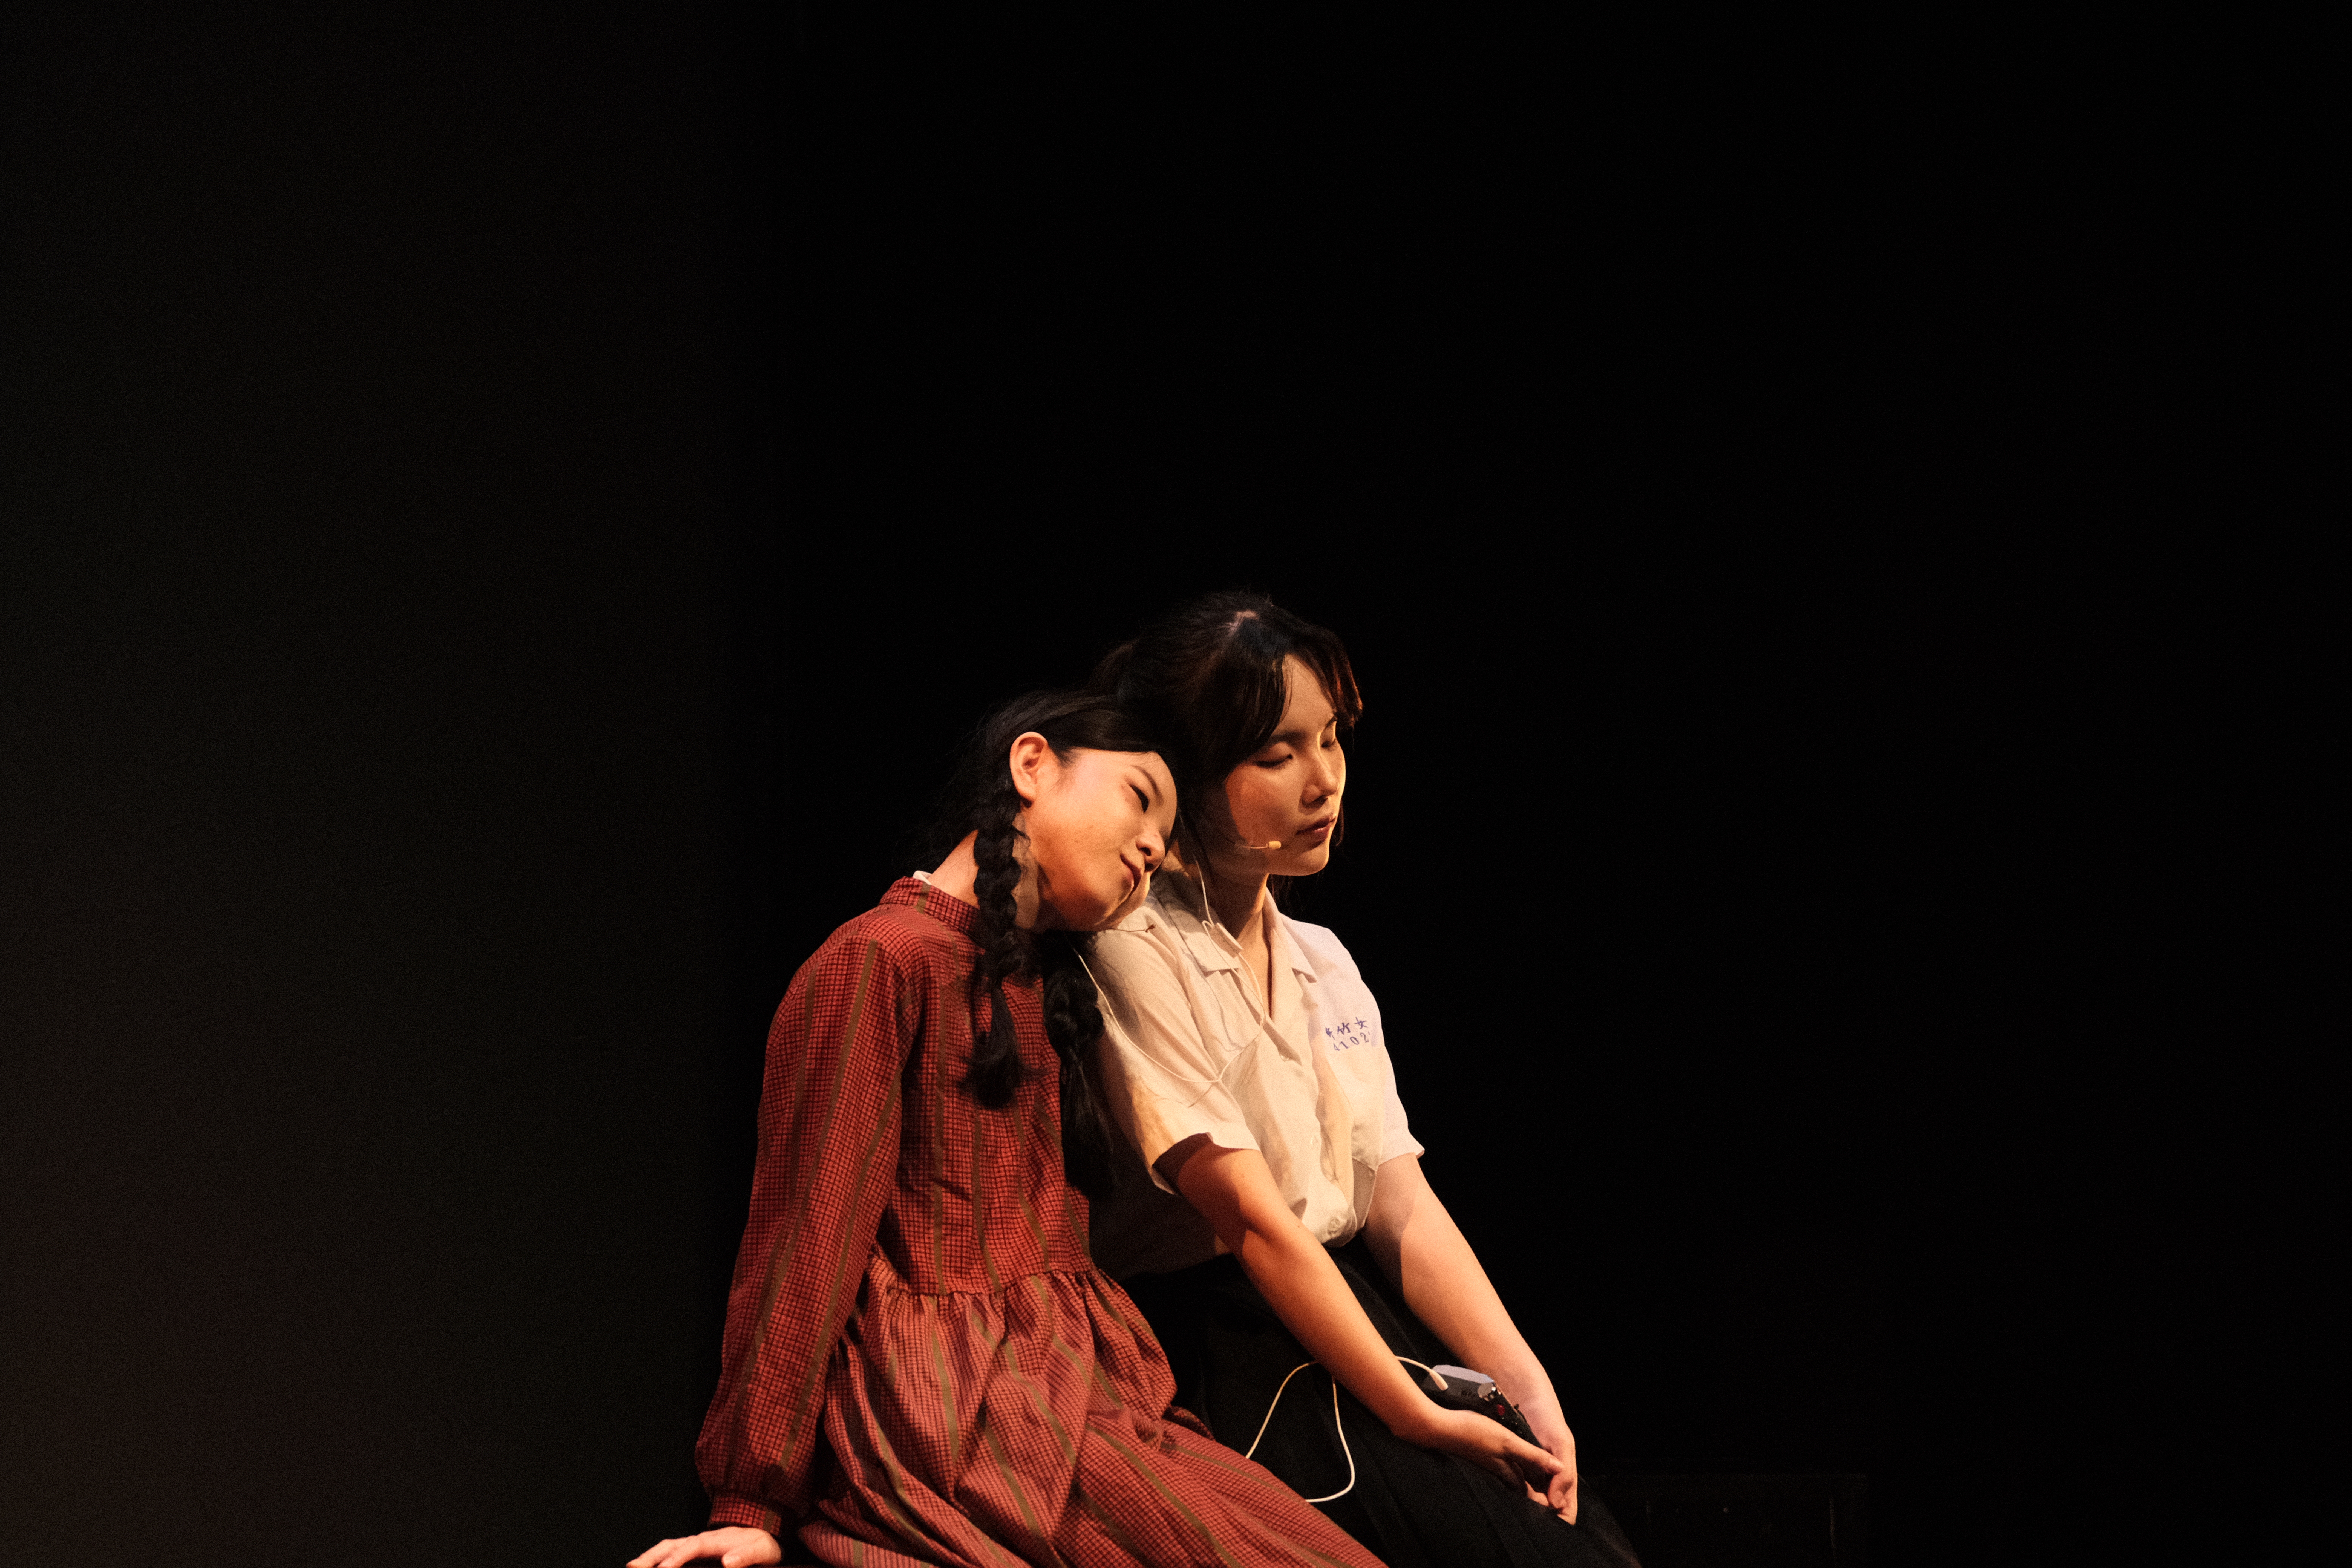 中文系畢業公演演出劇照。左為娃娃（莊雅筑飾），右為夏安（郭瑞雅飾）。中文畢業公演團隊提供。